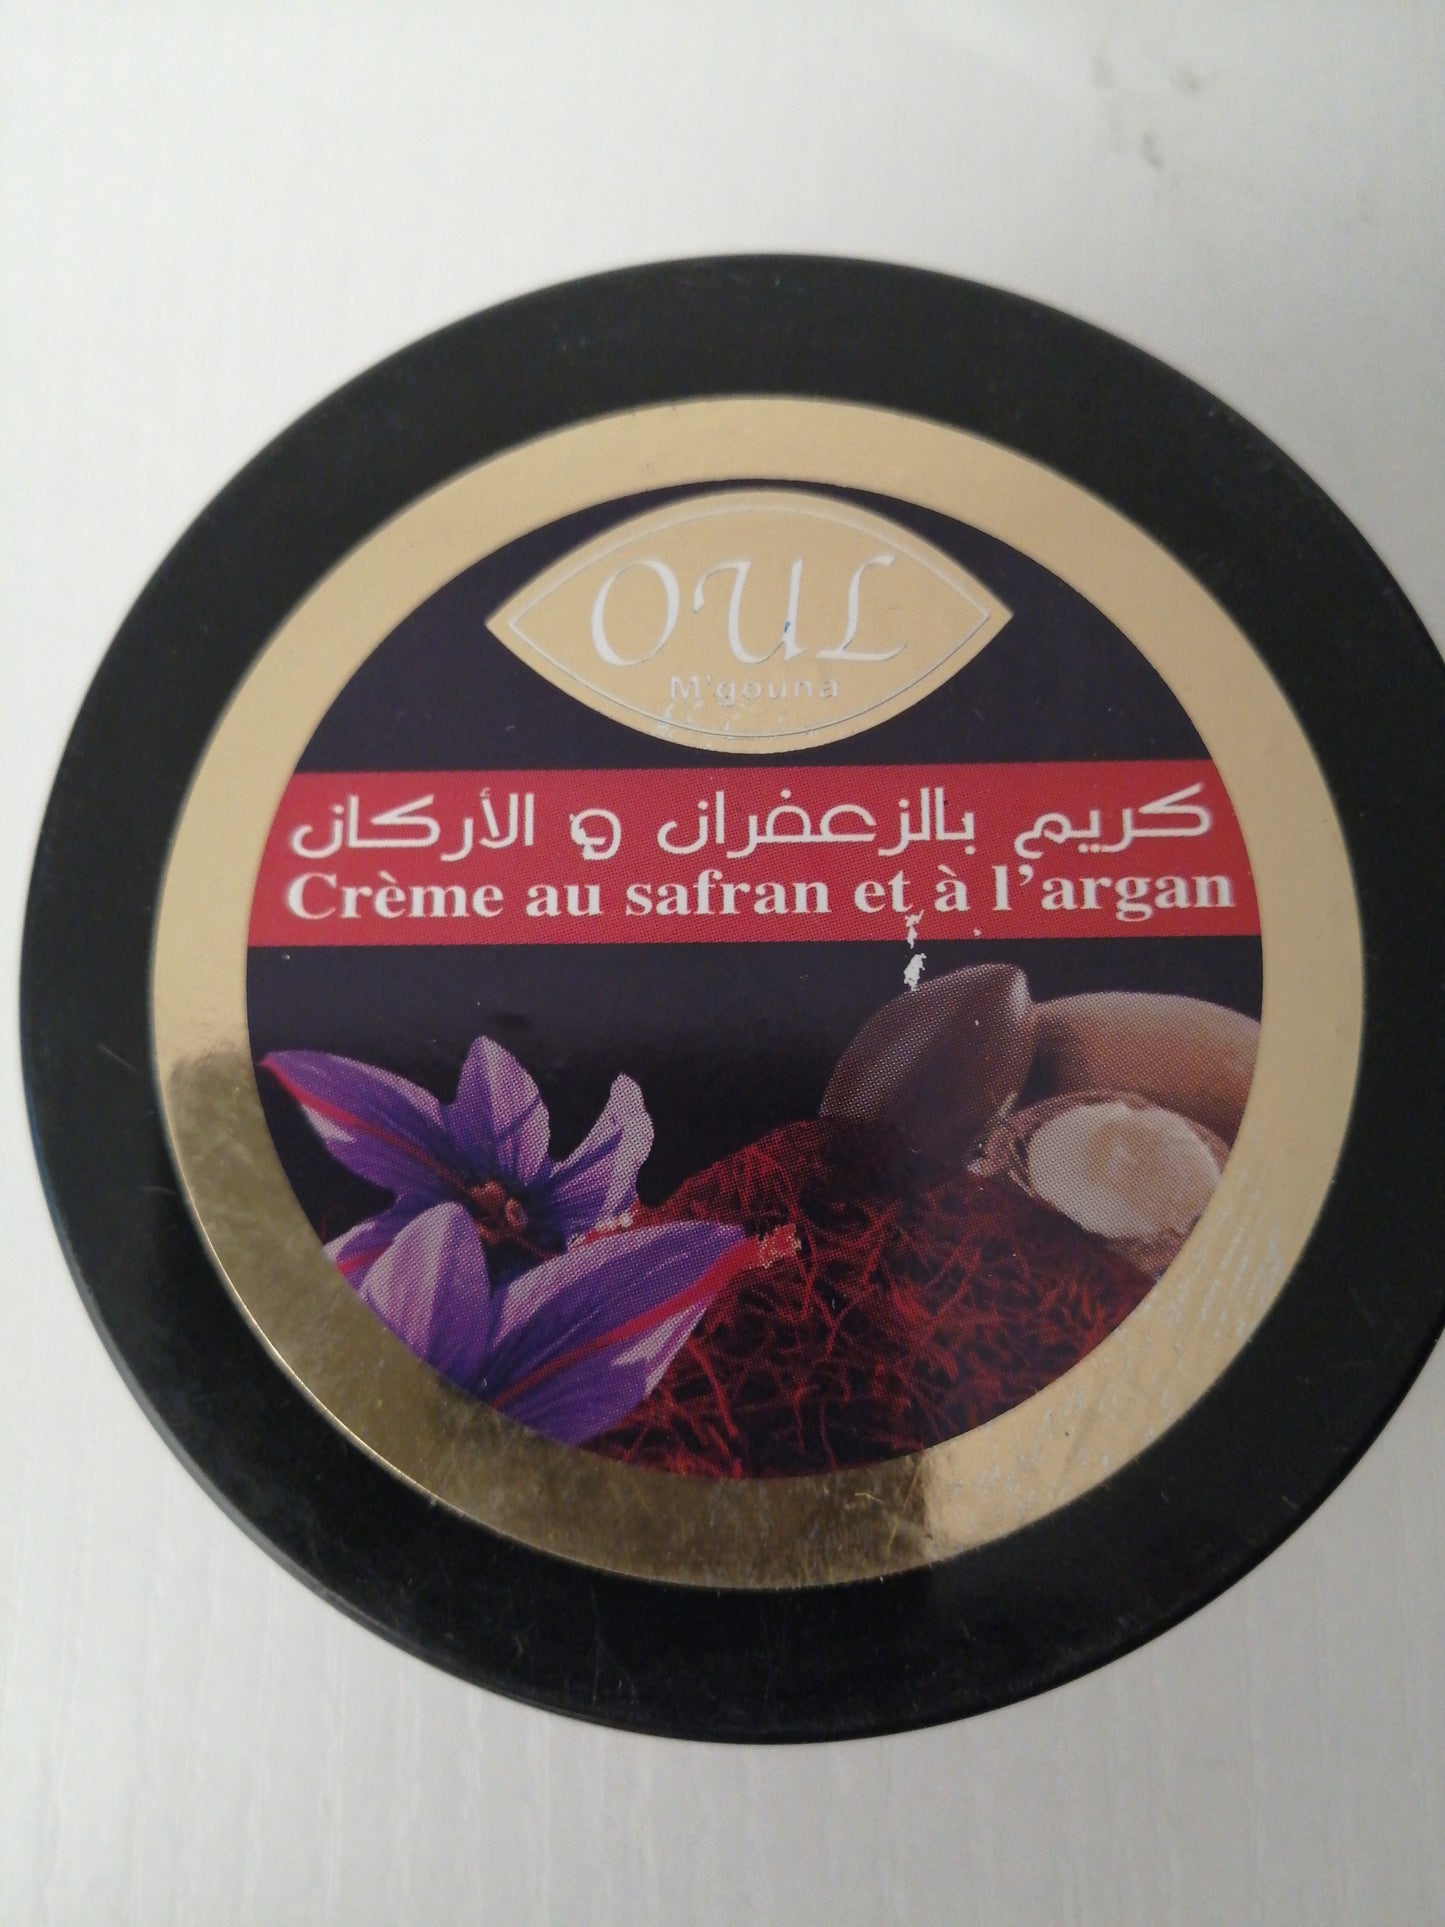 Crème au safran et à l'argan